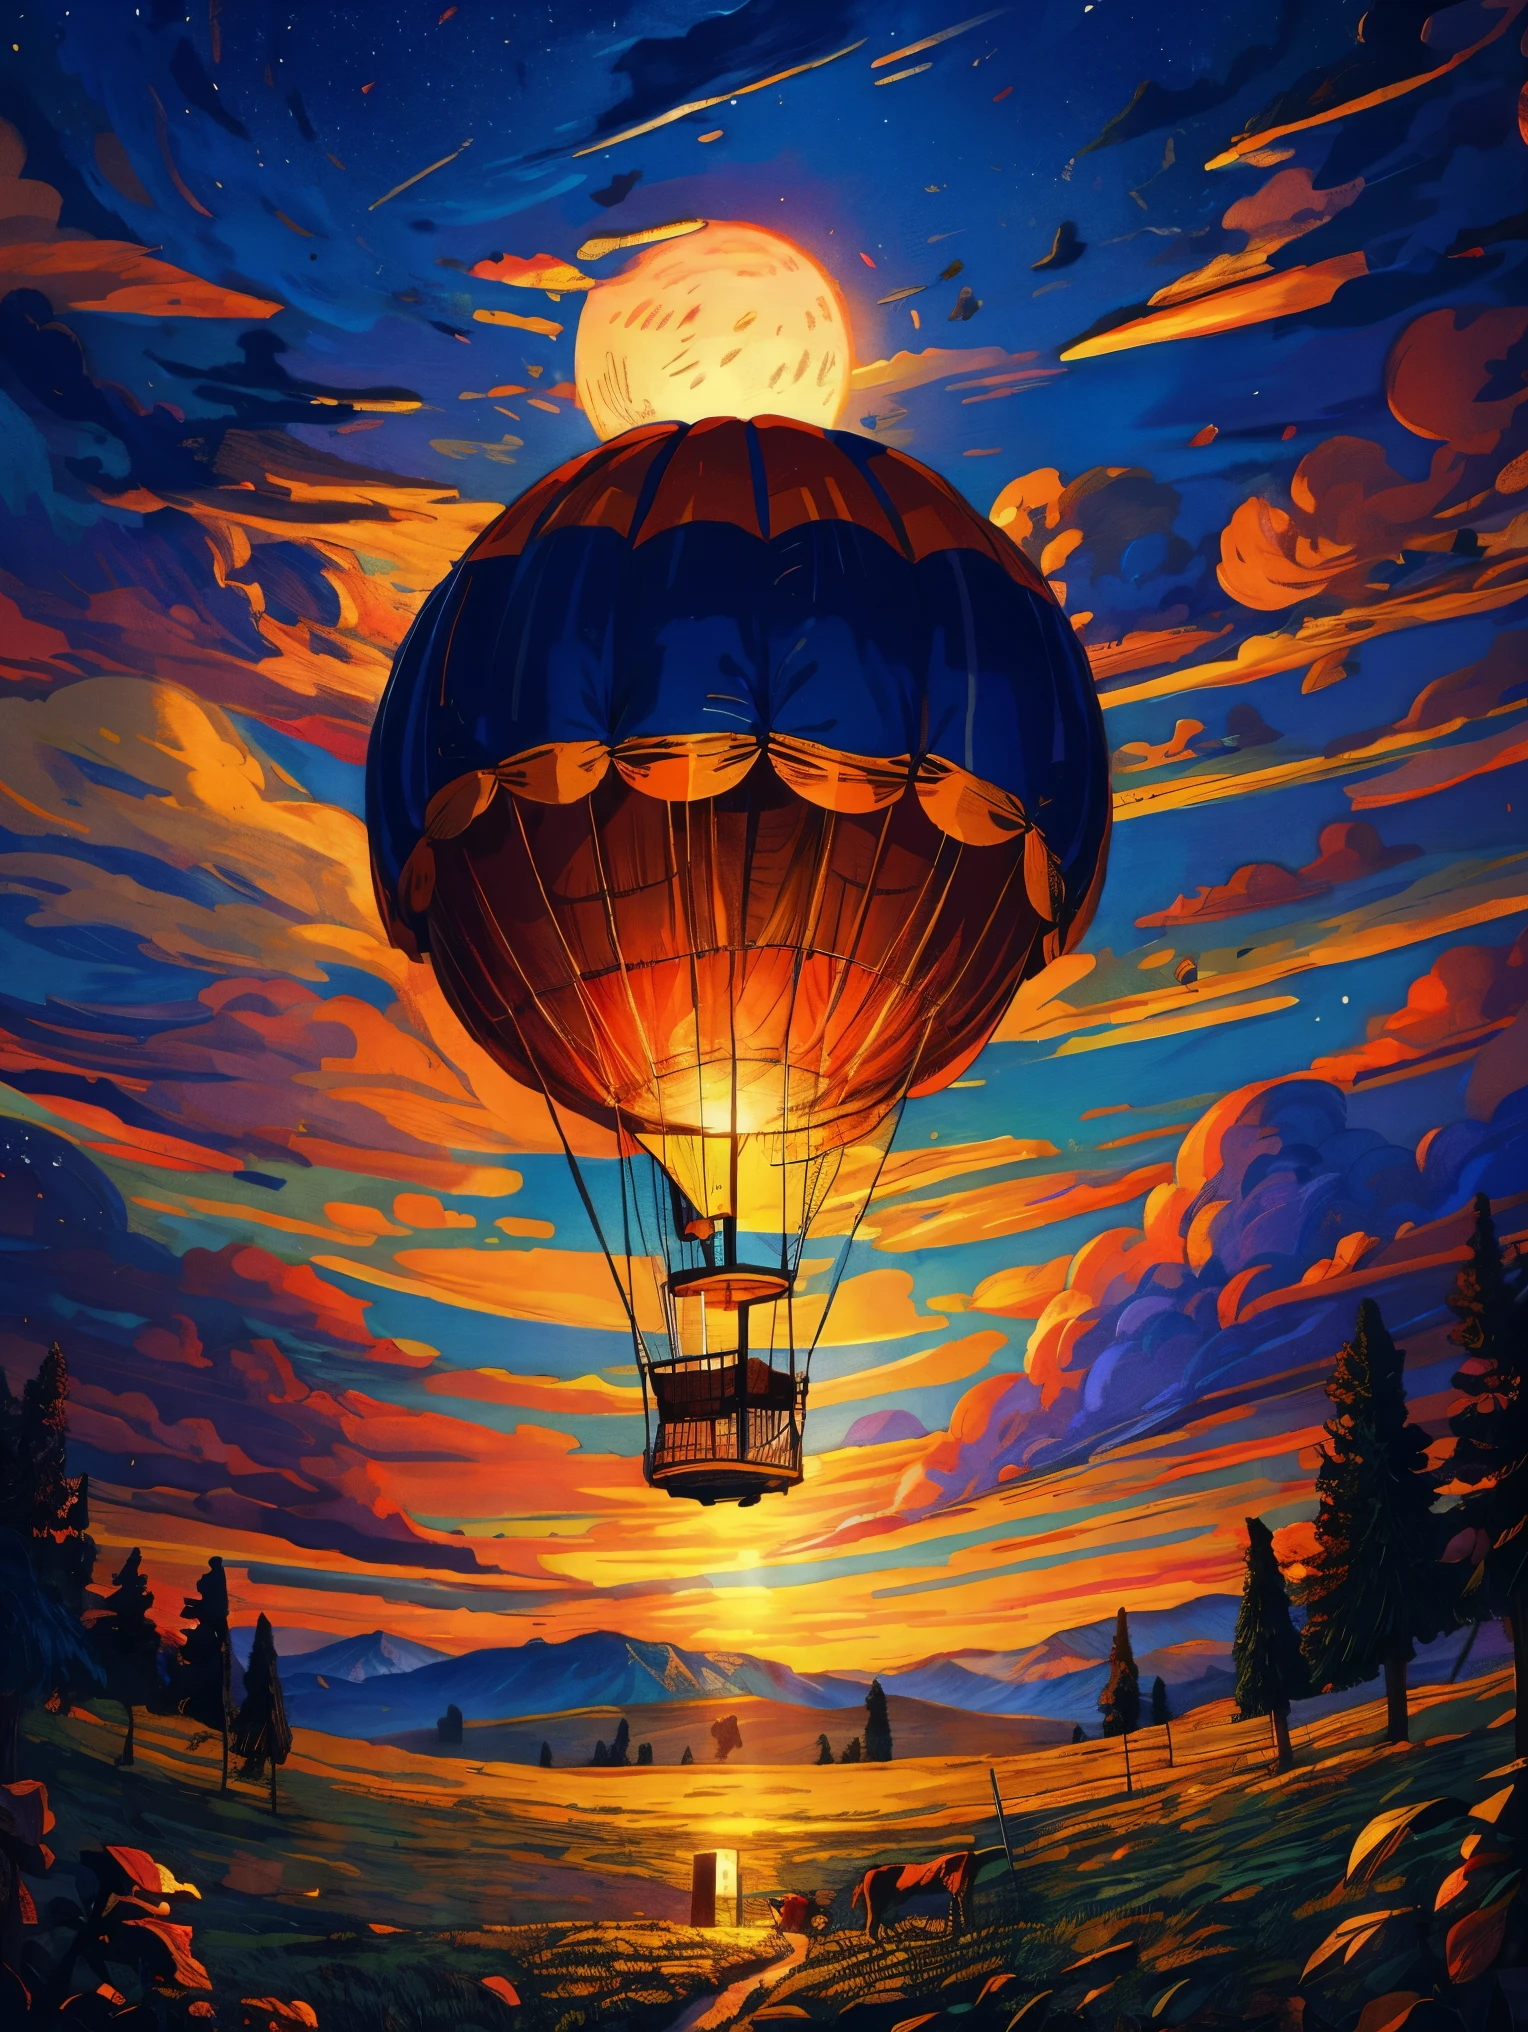 (史诗般的纸画) 的 (大的) 热气球, 浪漫神奇的流动, 繁星点点的月夜, 哥特式城堡, 山脉